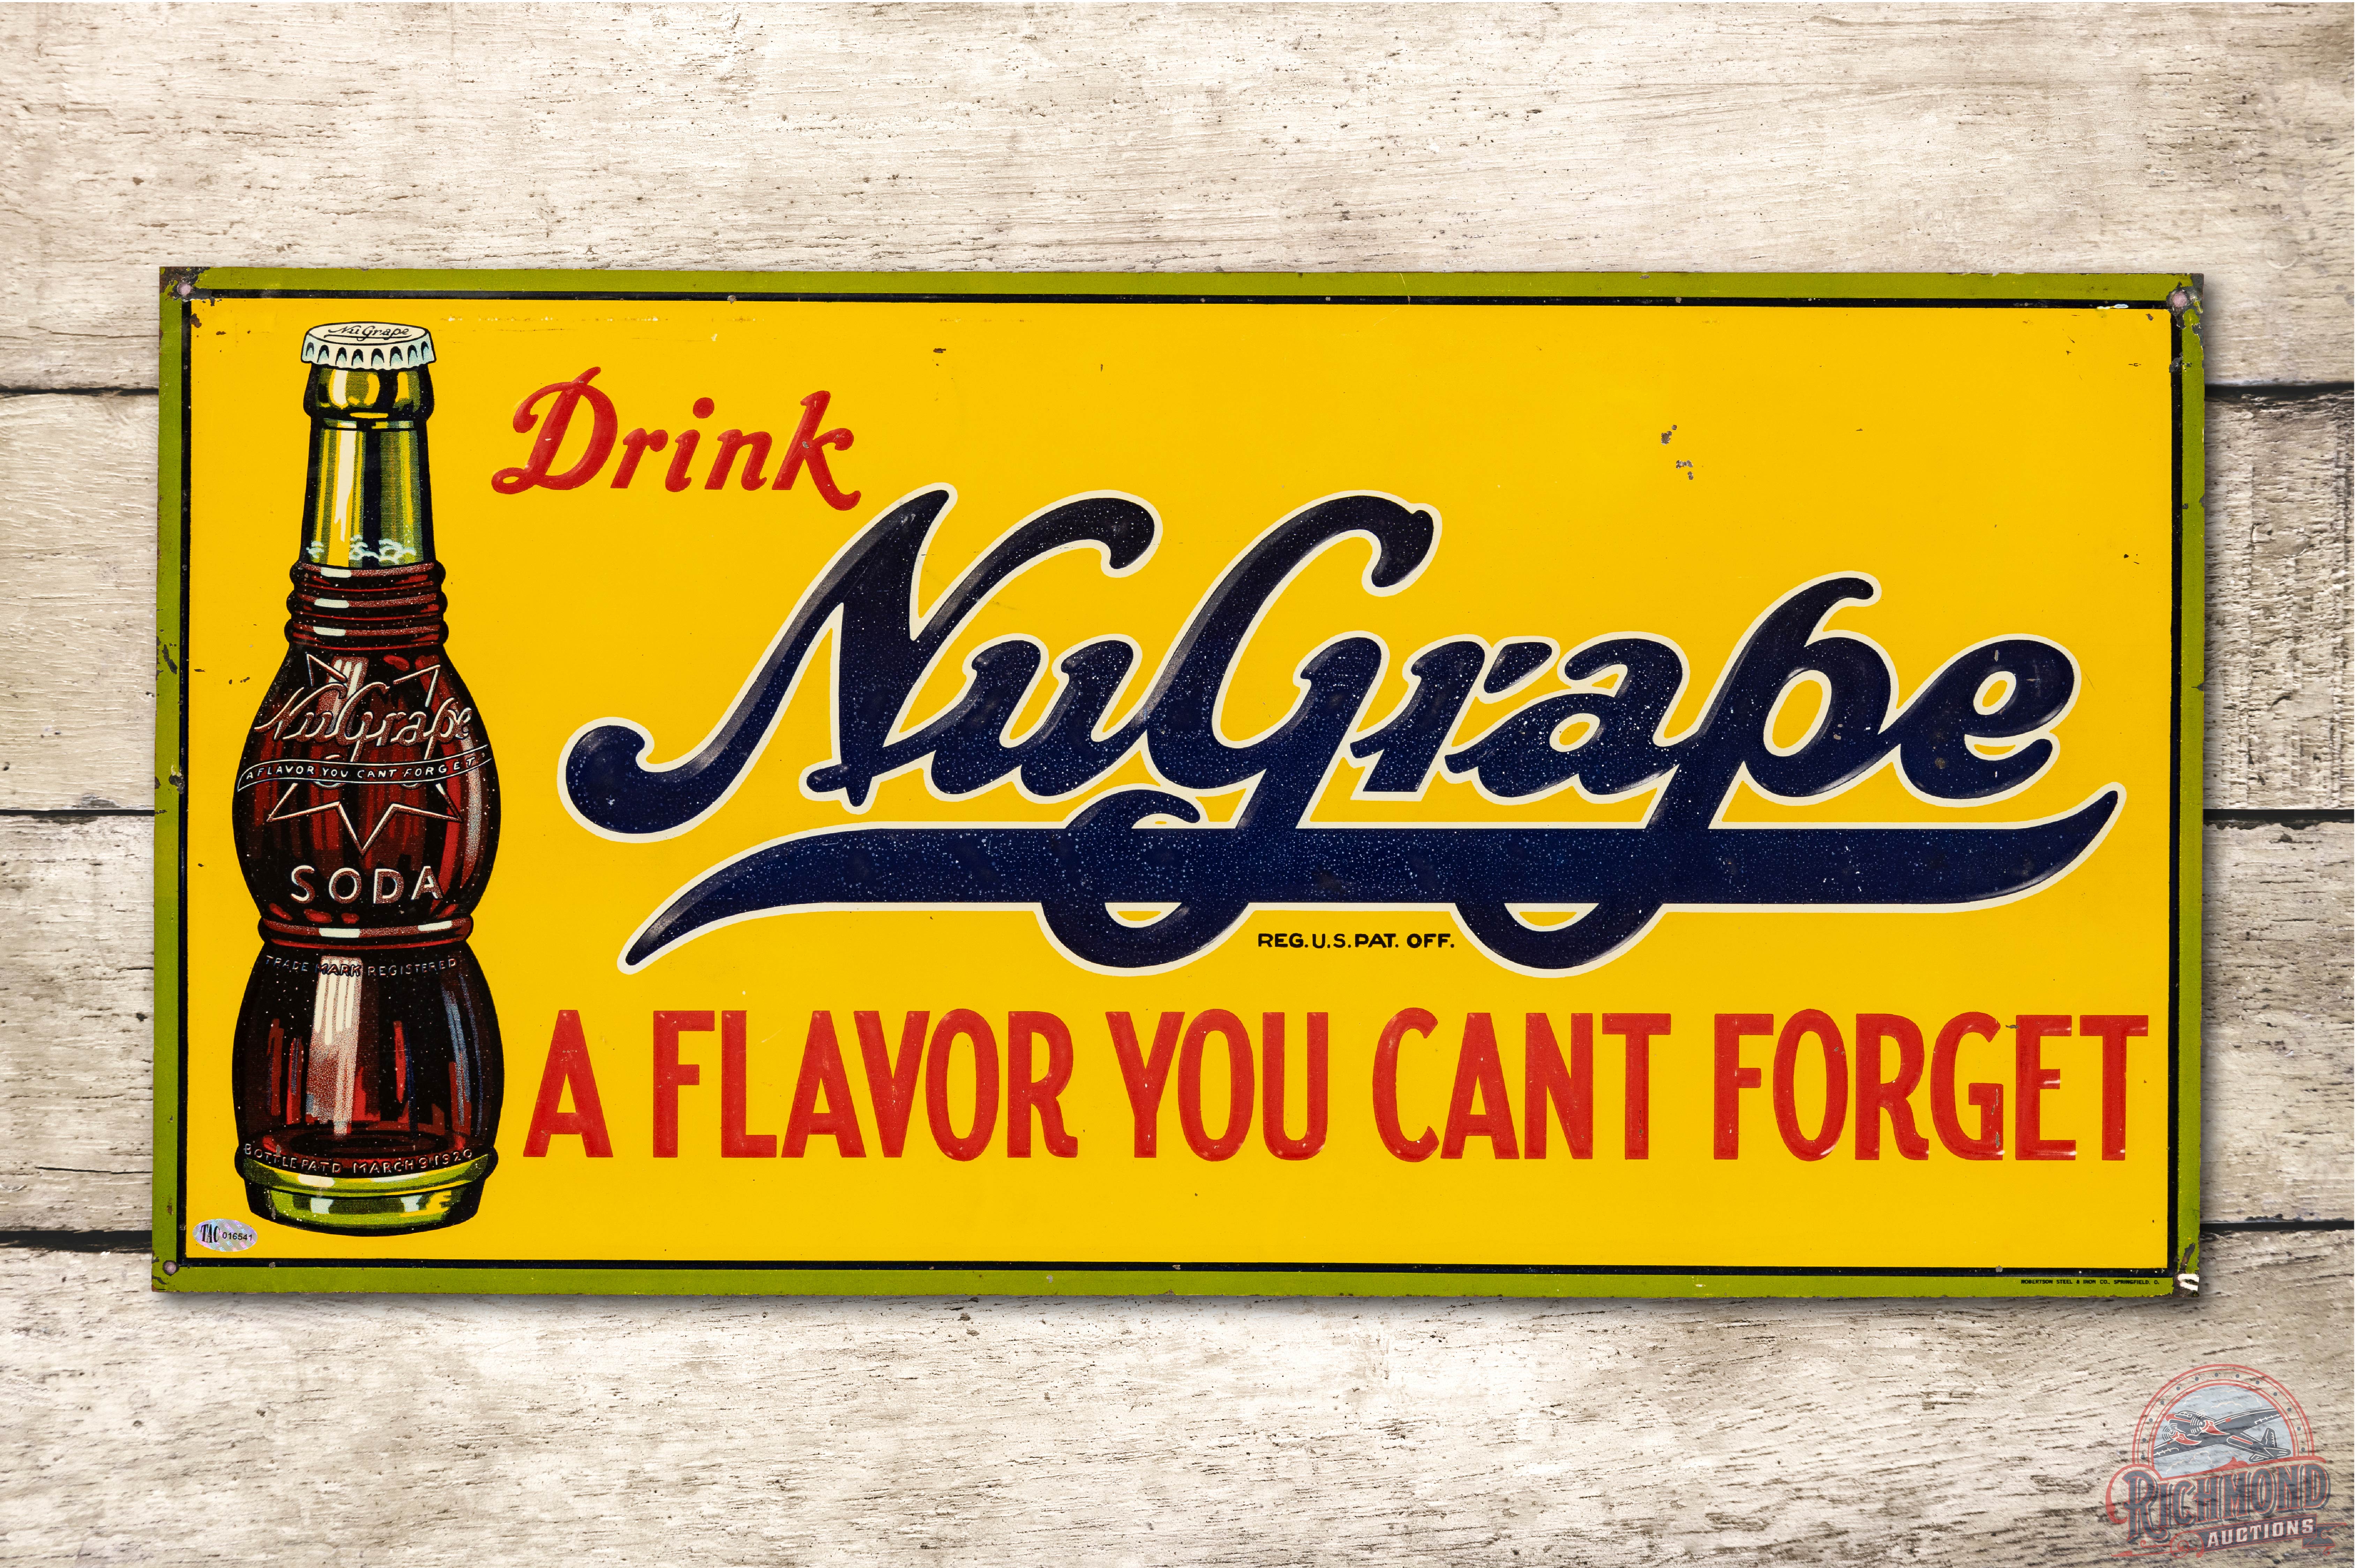 Drink NuGrape 